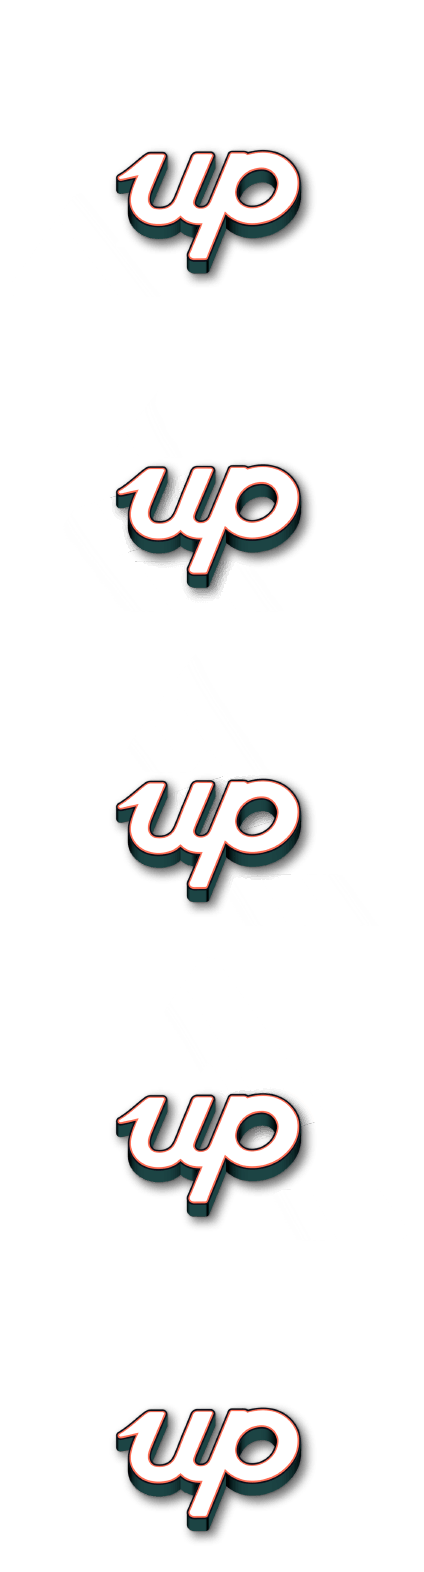 Animated 2up logo